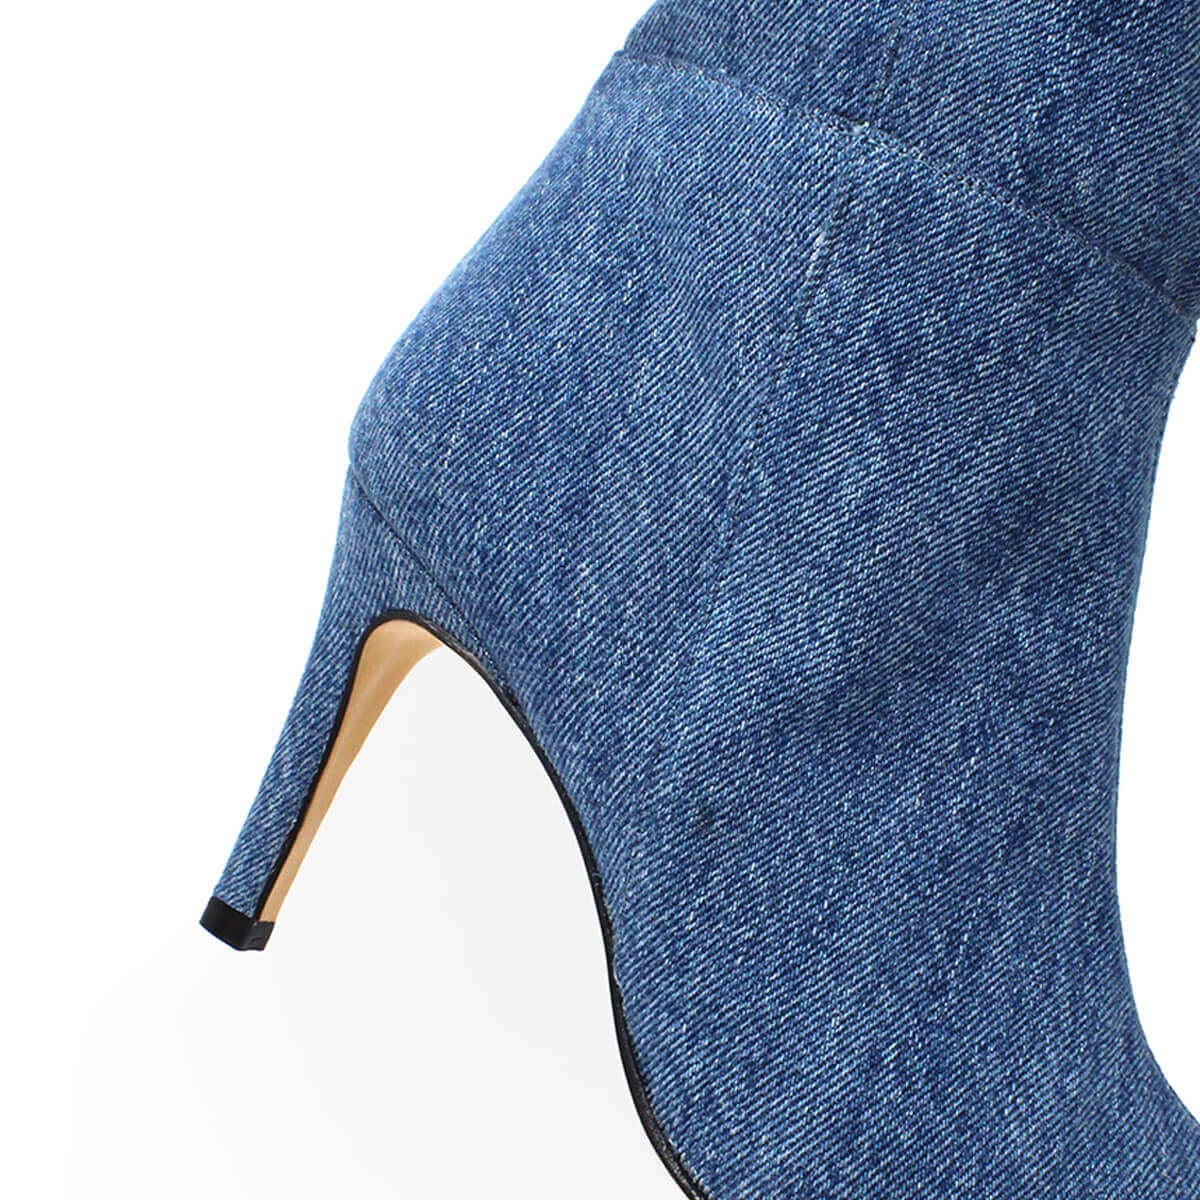 MITZY 75 - Denim Regina Romero Long High Heel Boot Shoe for Women